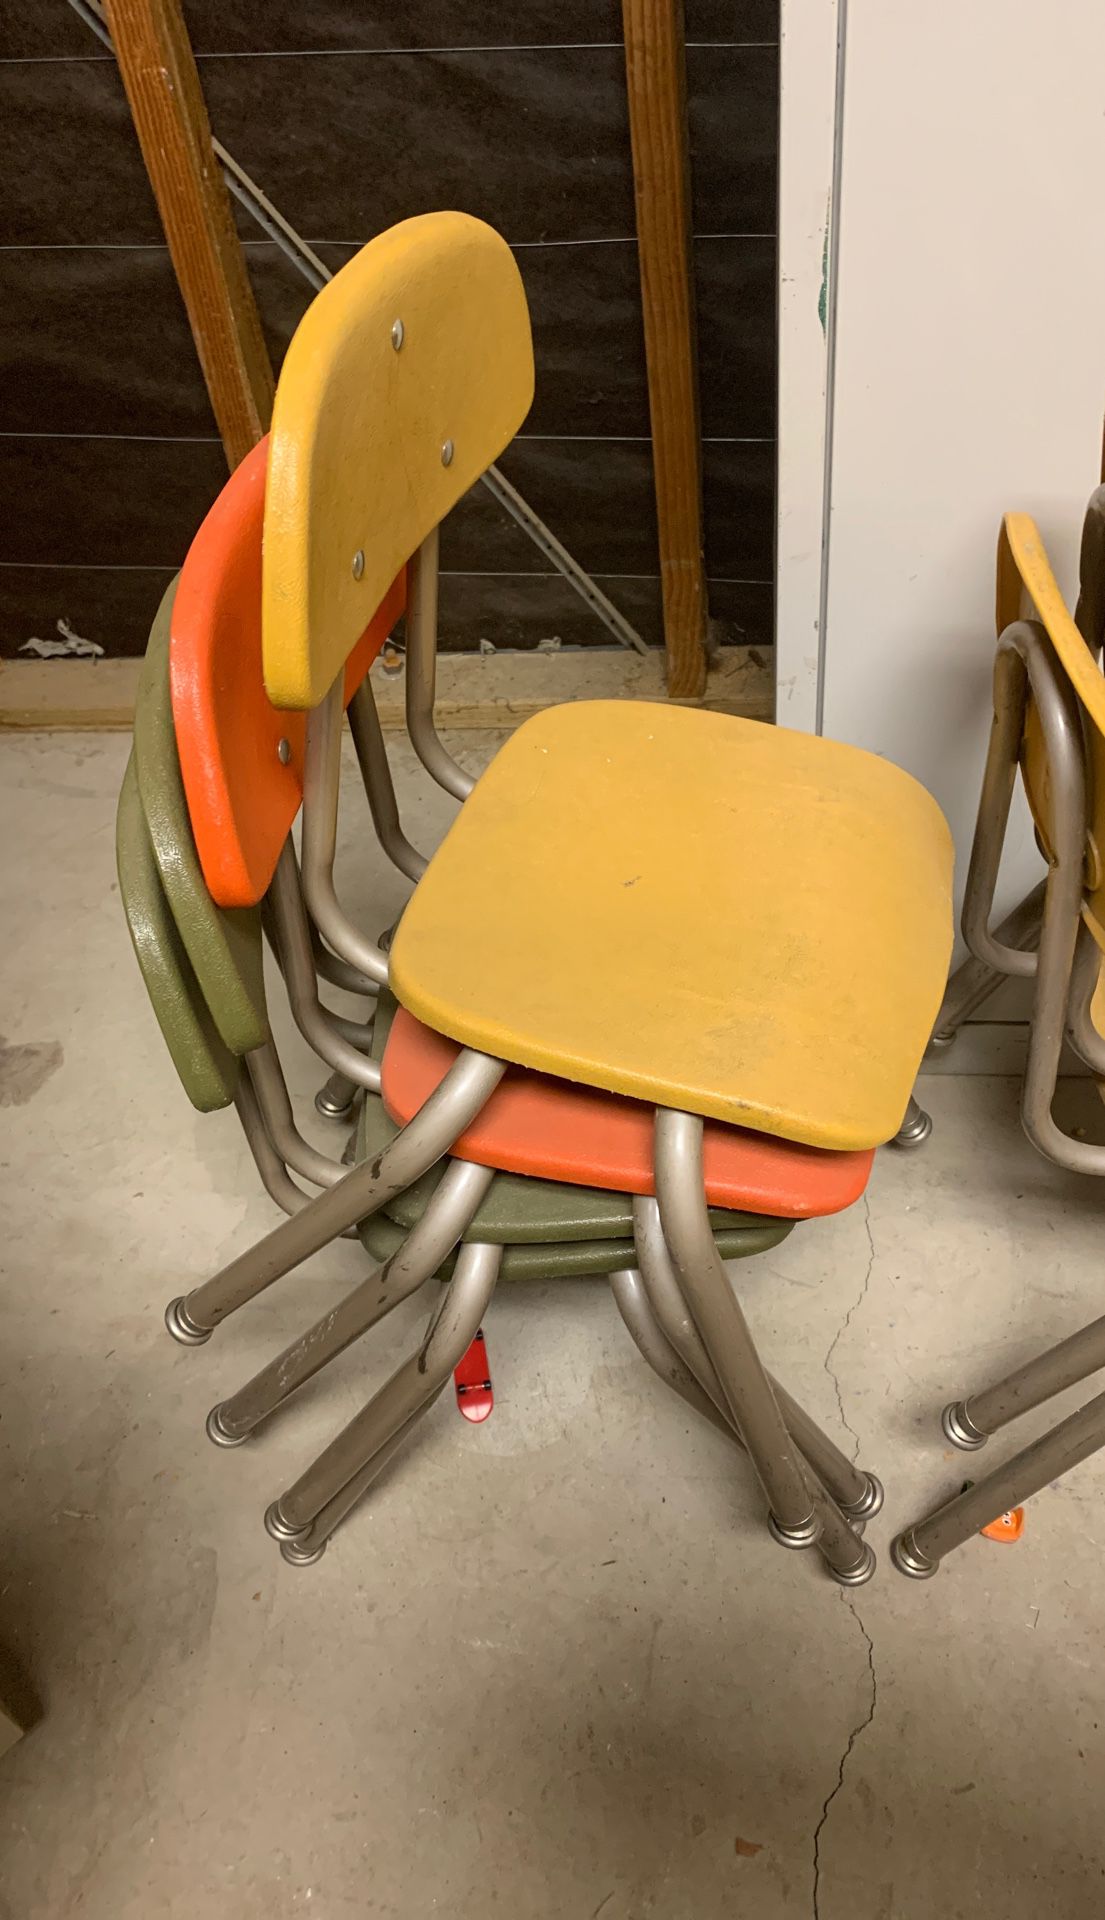 Kids chairs